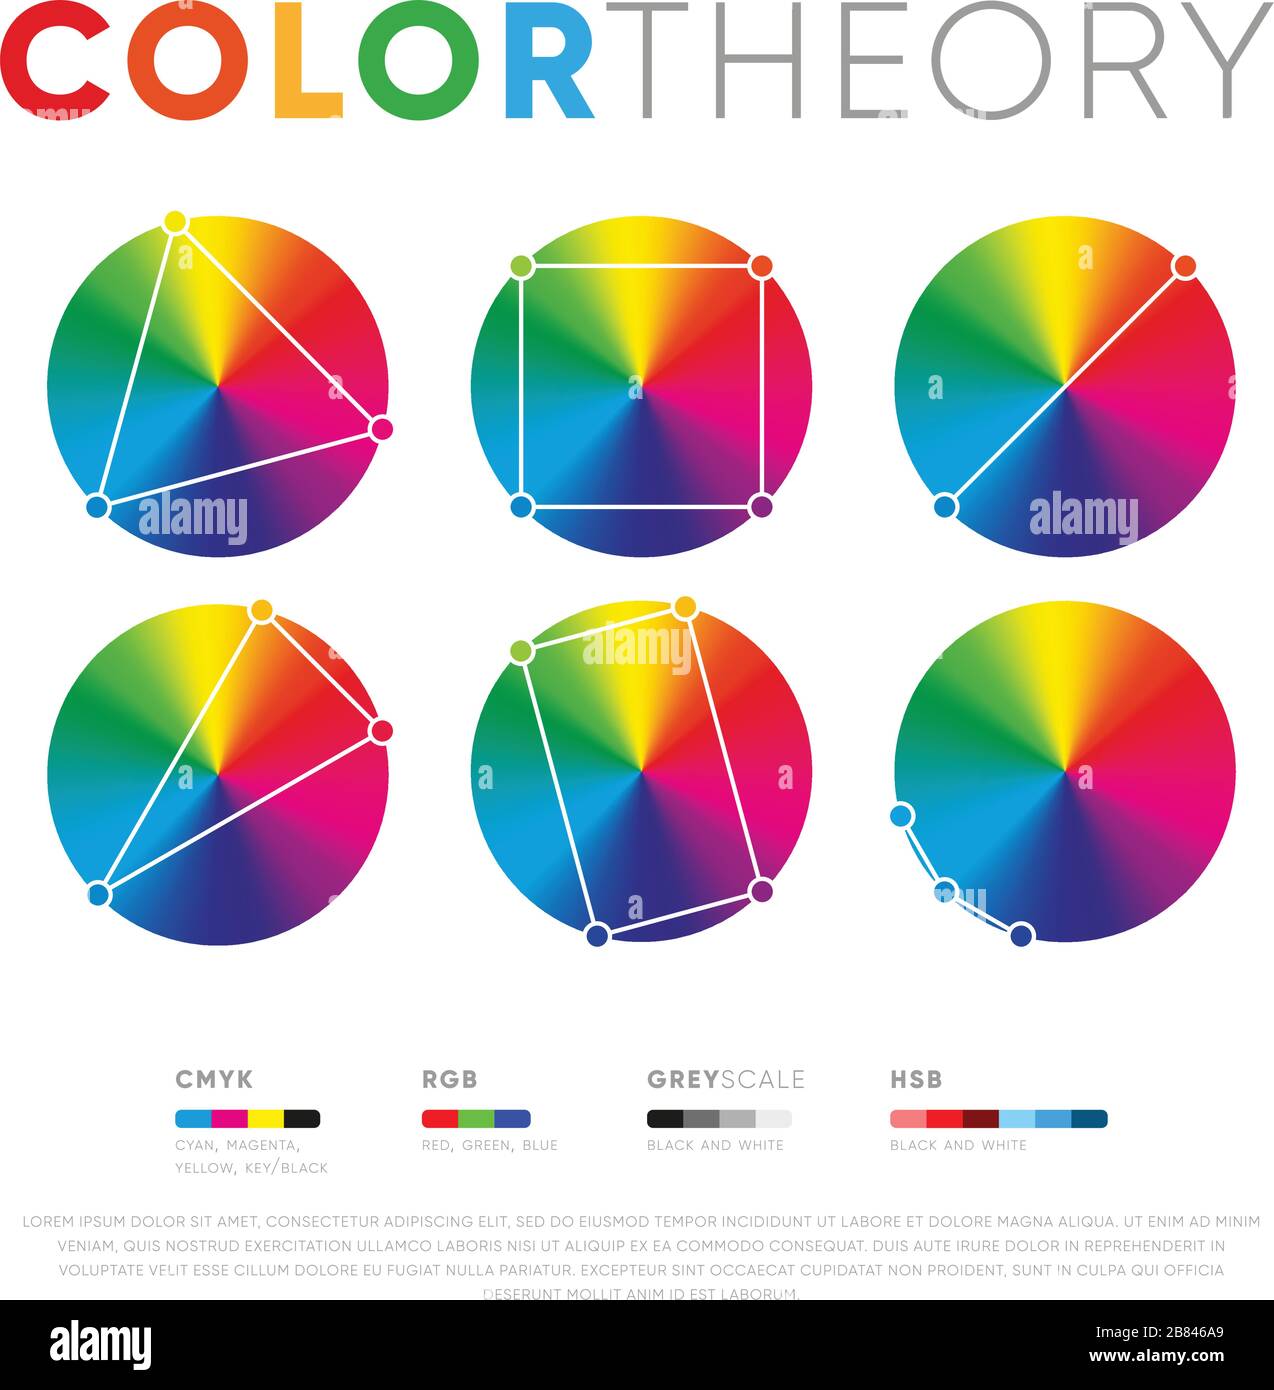 Ensemble de divers cercles colorés montrant des combinaisons et des relations de couleurs en théorie Illustration de Vecteur